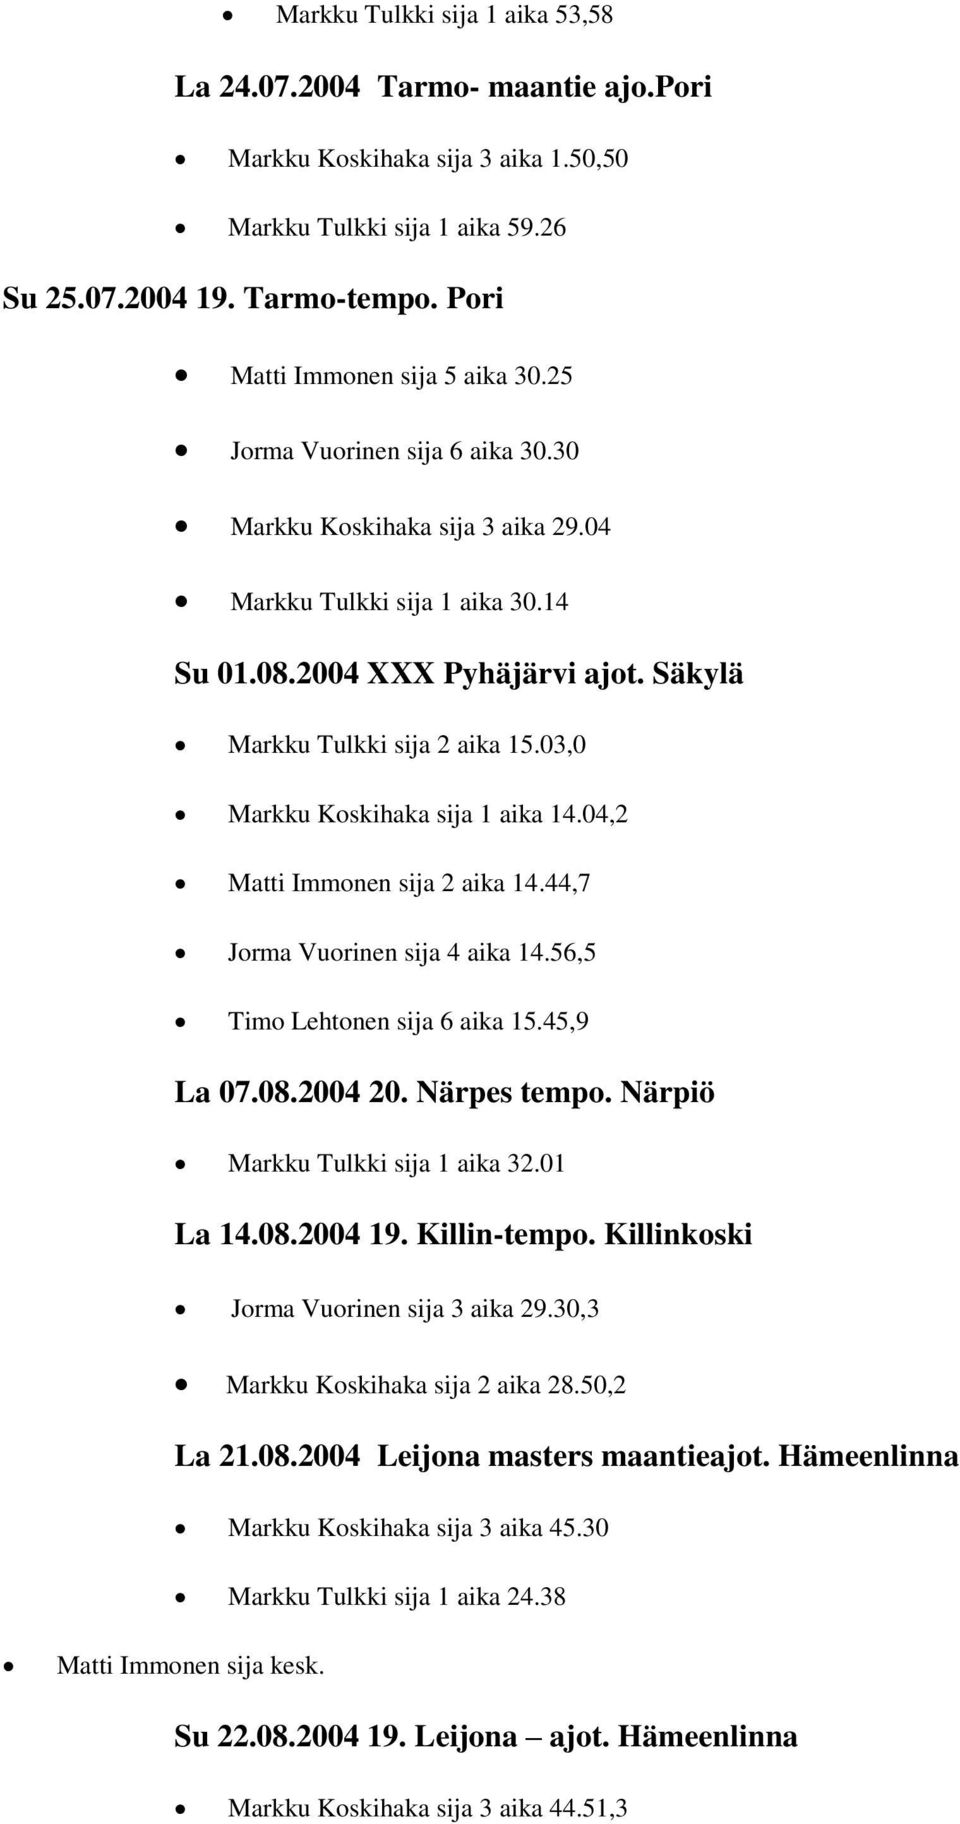 Säkylä Markku Tulkki sija 2 aika 15.03,0 Markku Koskihaka sija 1 aika 14.04,2 Matti Immonen sija 2 aika 14.44,7 Jorma Vuorinen sija 4 aika 14.56,5 Timo Lehtonen sija 6 aika 15.45,9 La 07.08.2004 20.